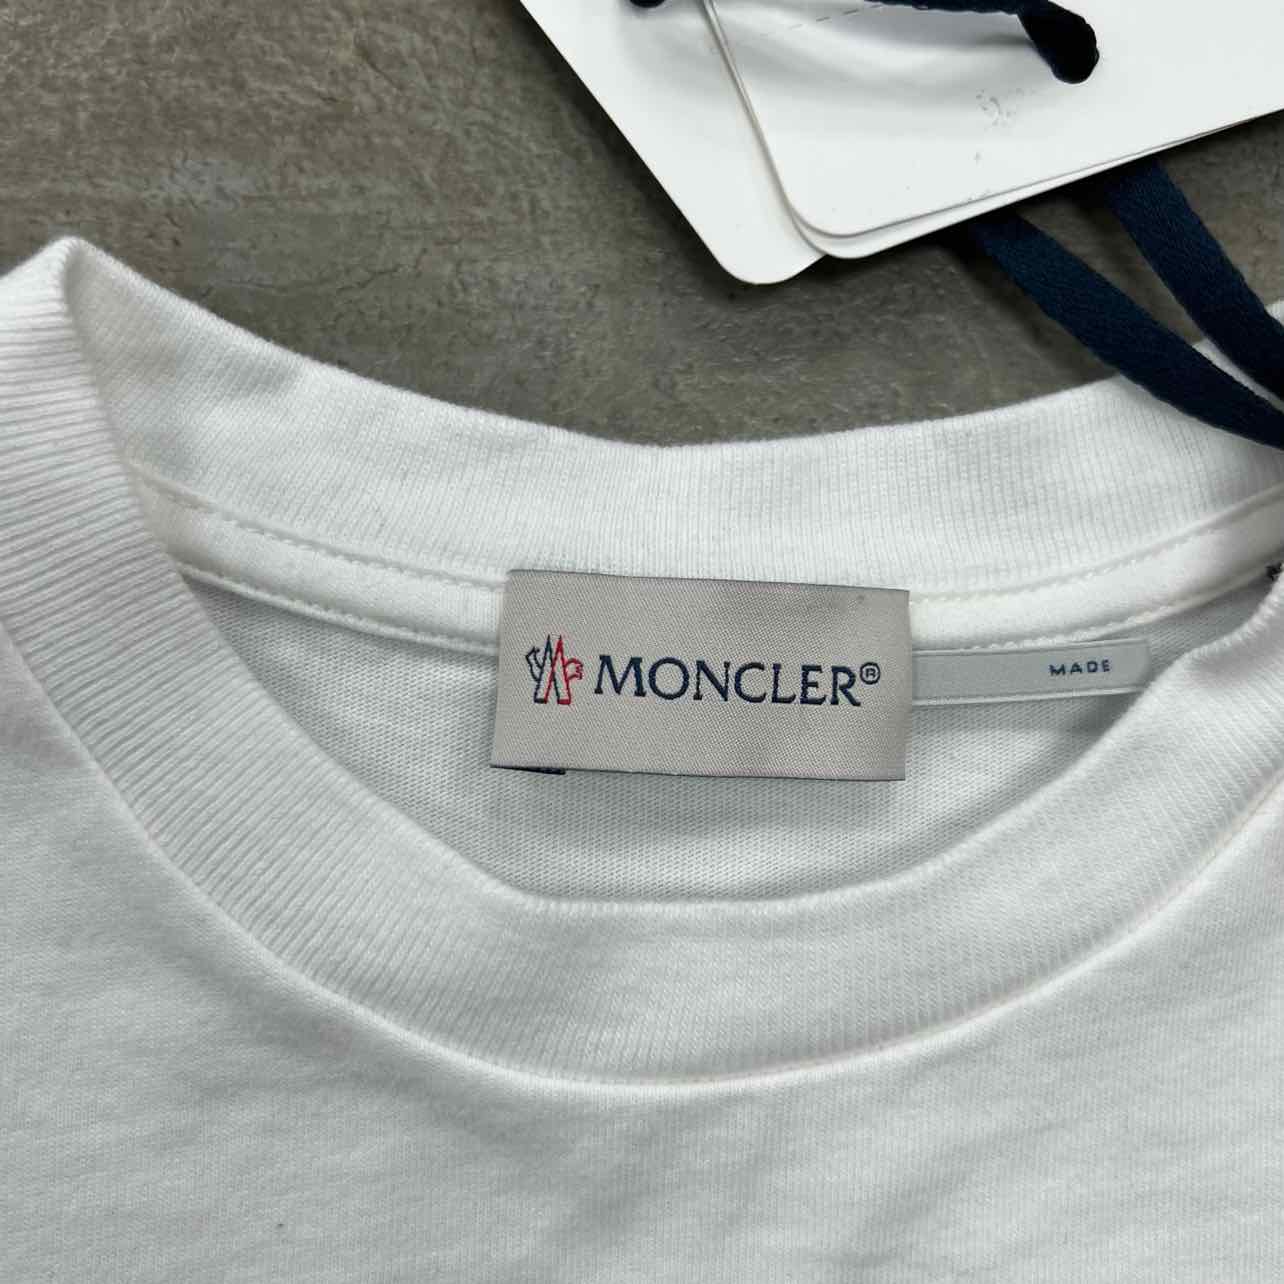 Moncler T-shirt - White » ASAP Shipping » Kids Fashion